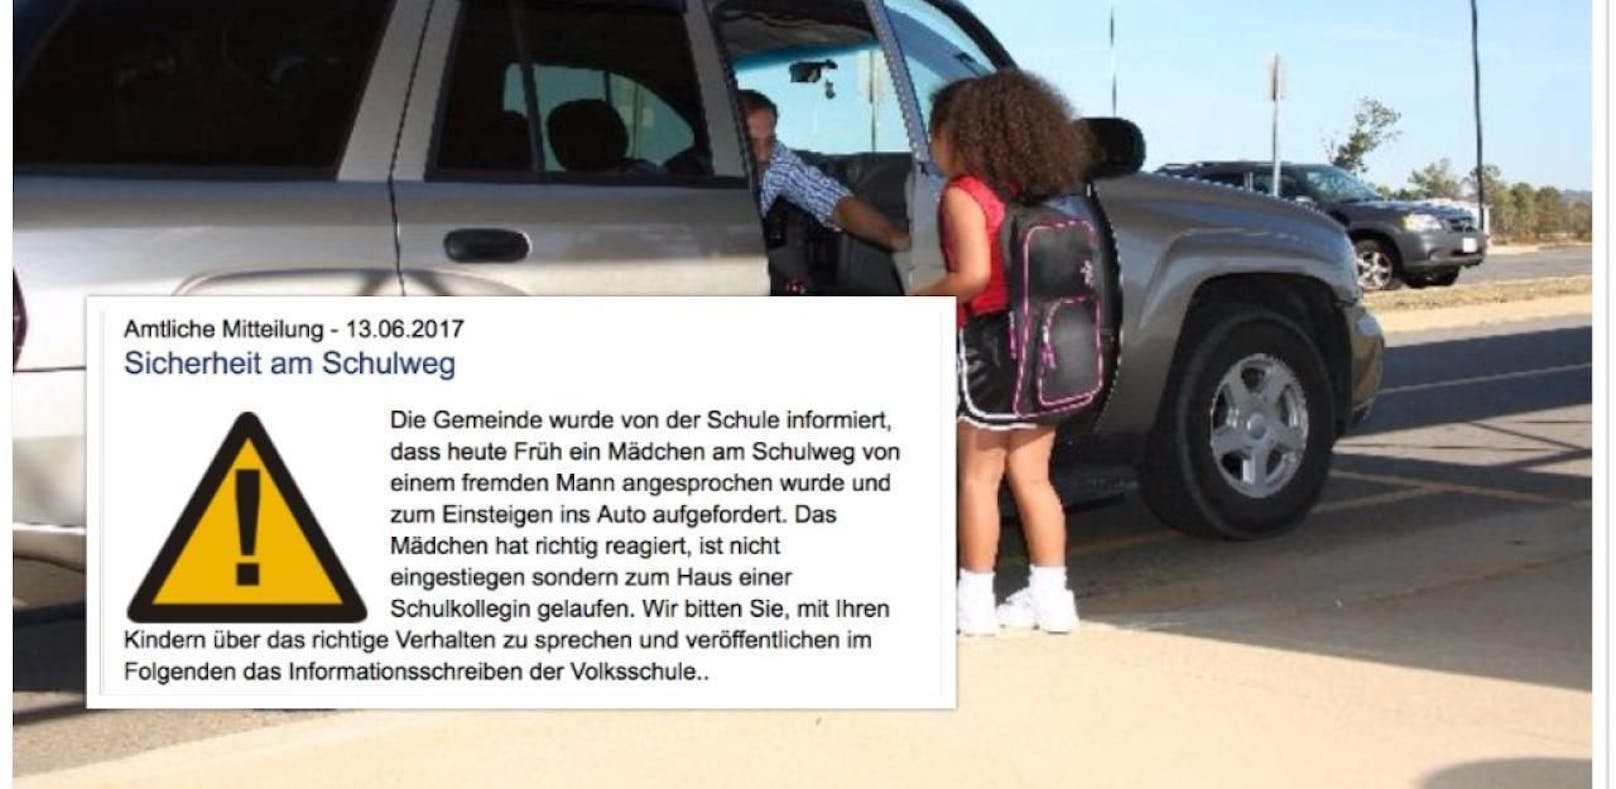 Ein Mann wollte das Mädchen ins Auto locken  das Kind reagierte vorbildlich und lief zu einer Schulfreundin.